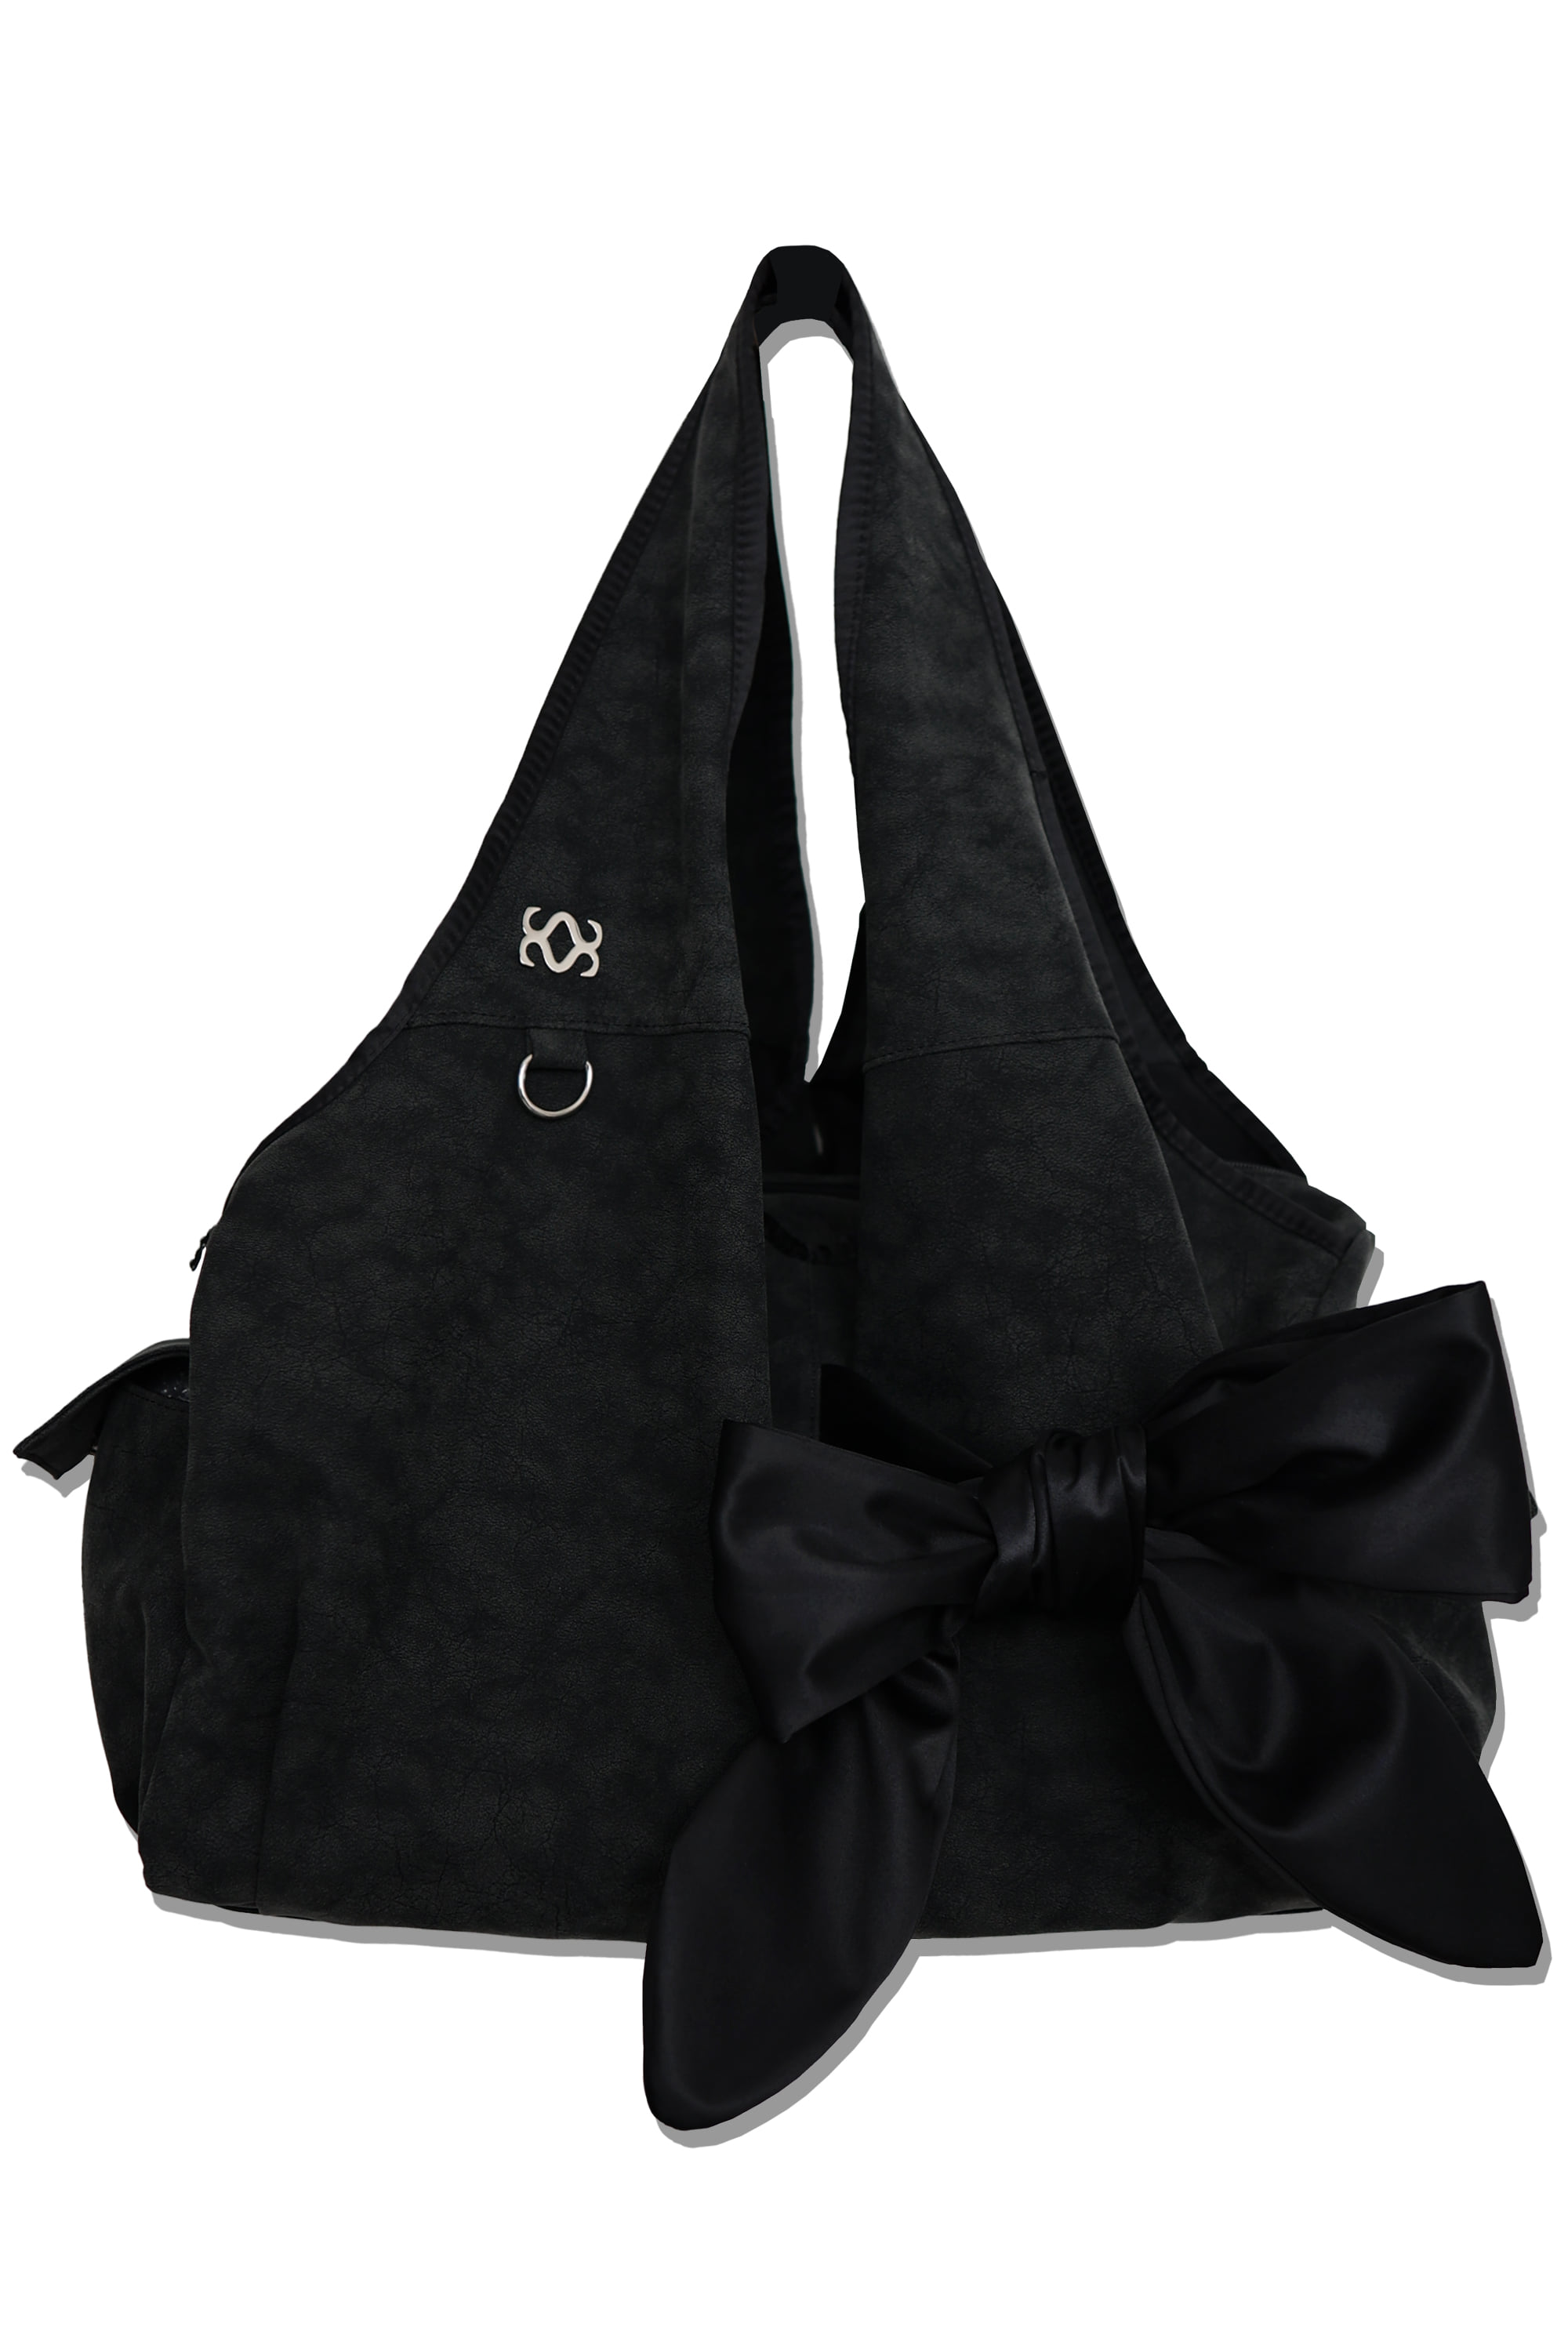 [Vegan Nubuck] bow shoulder bag (black)